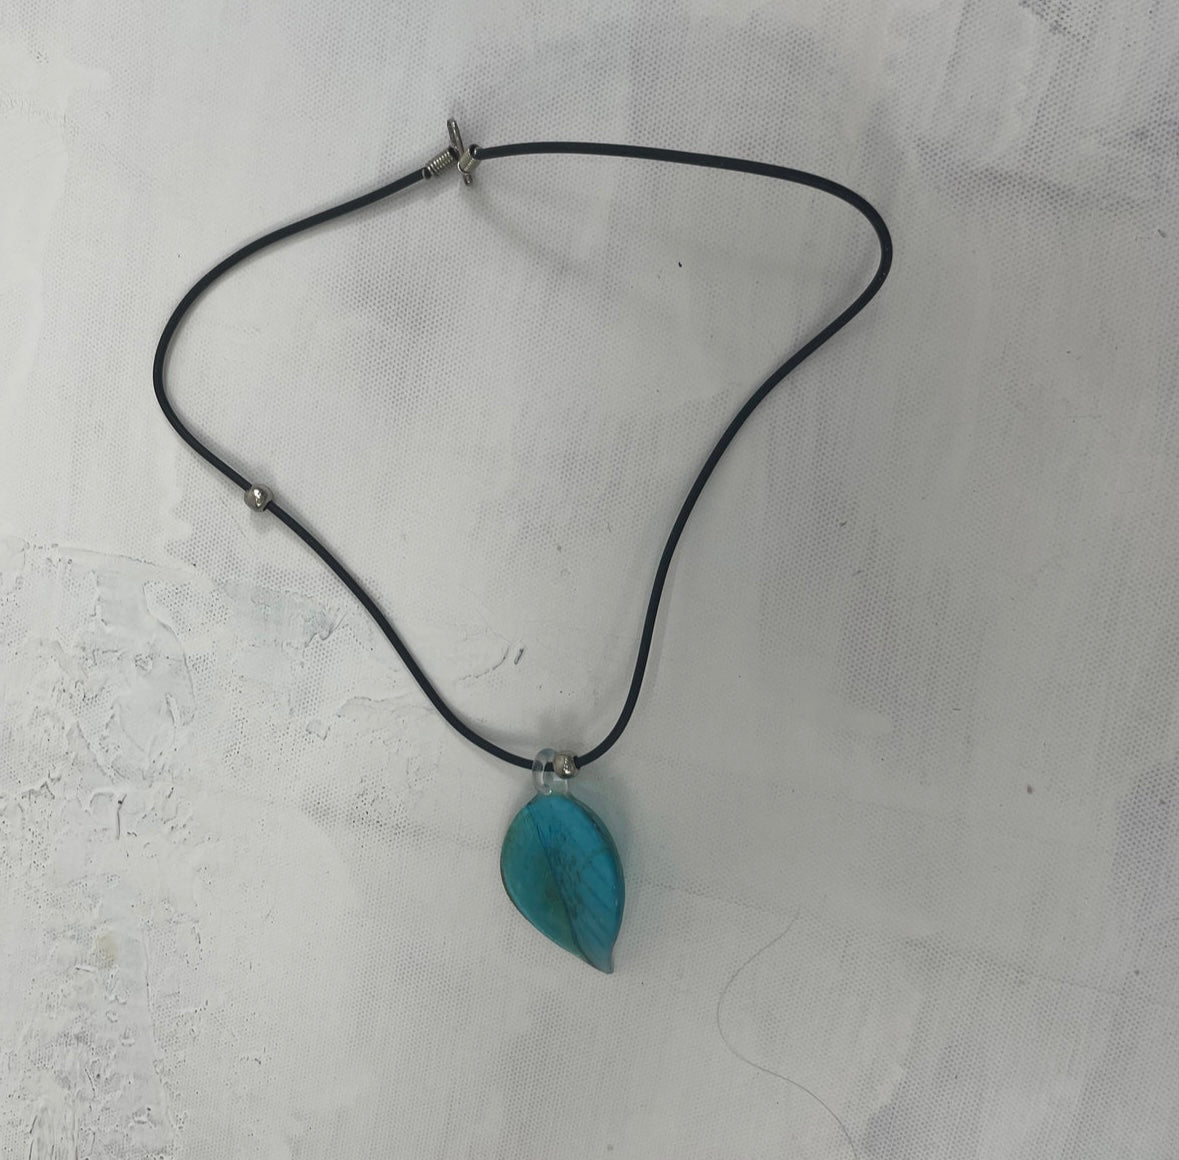 MERMAID CORE DROP | #2 blue glass pendant necklace